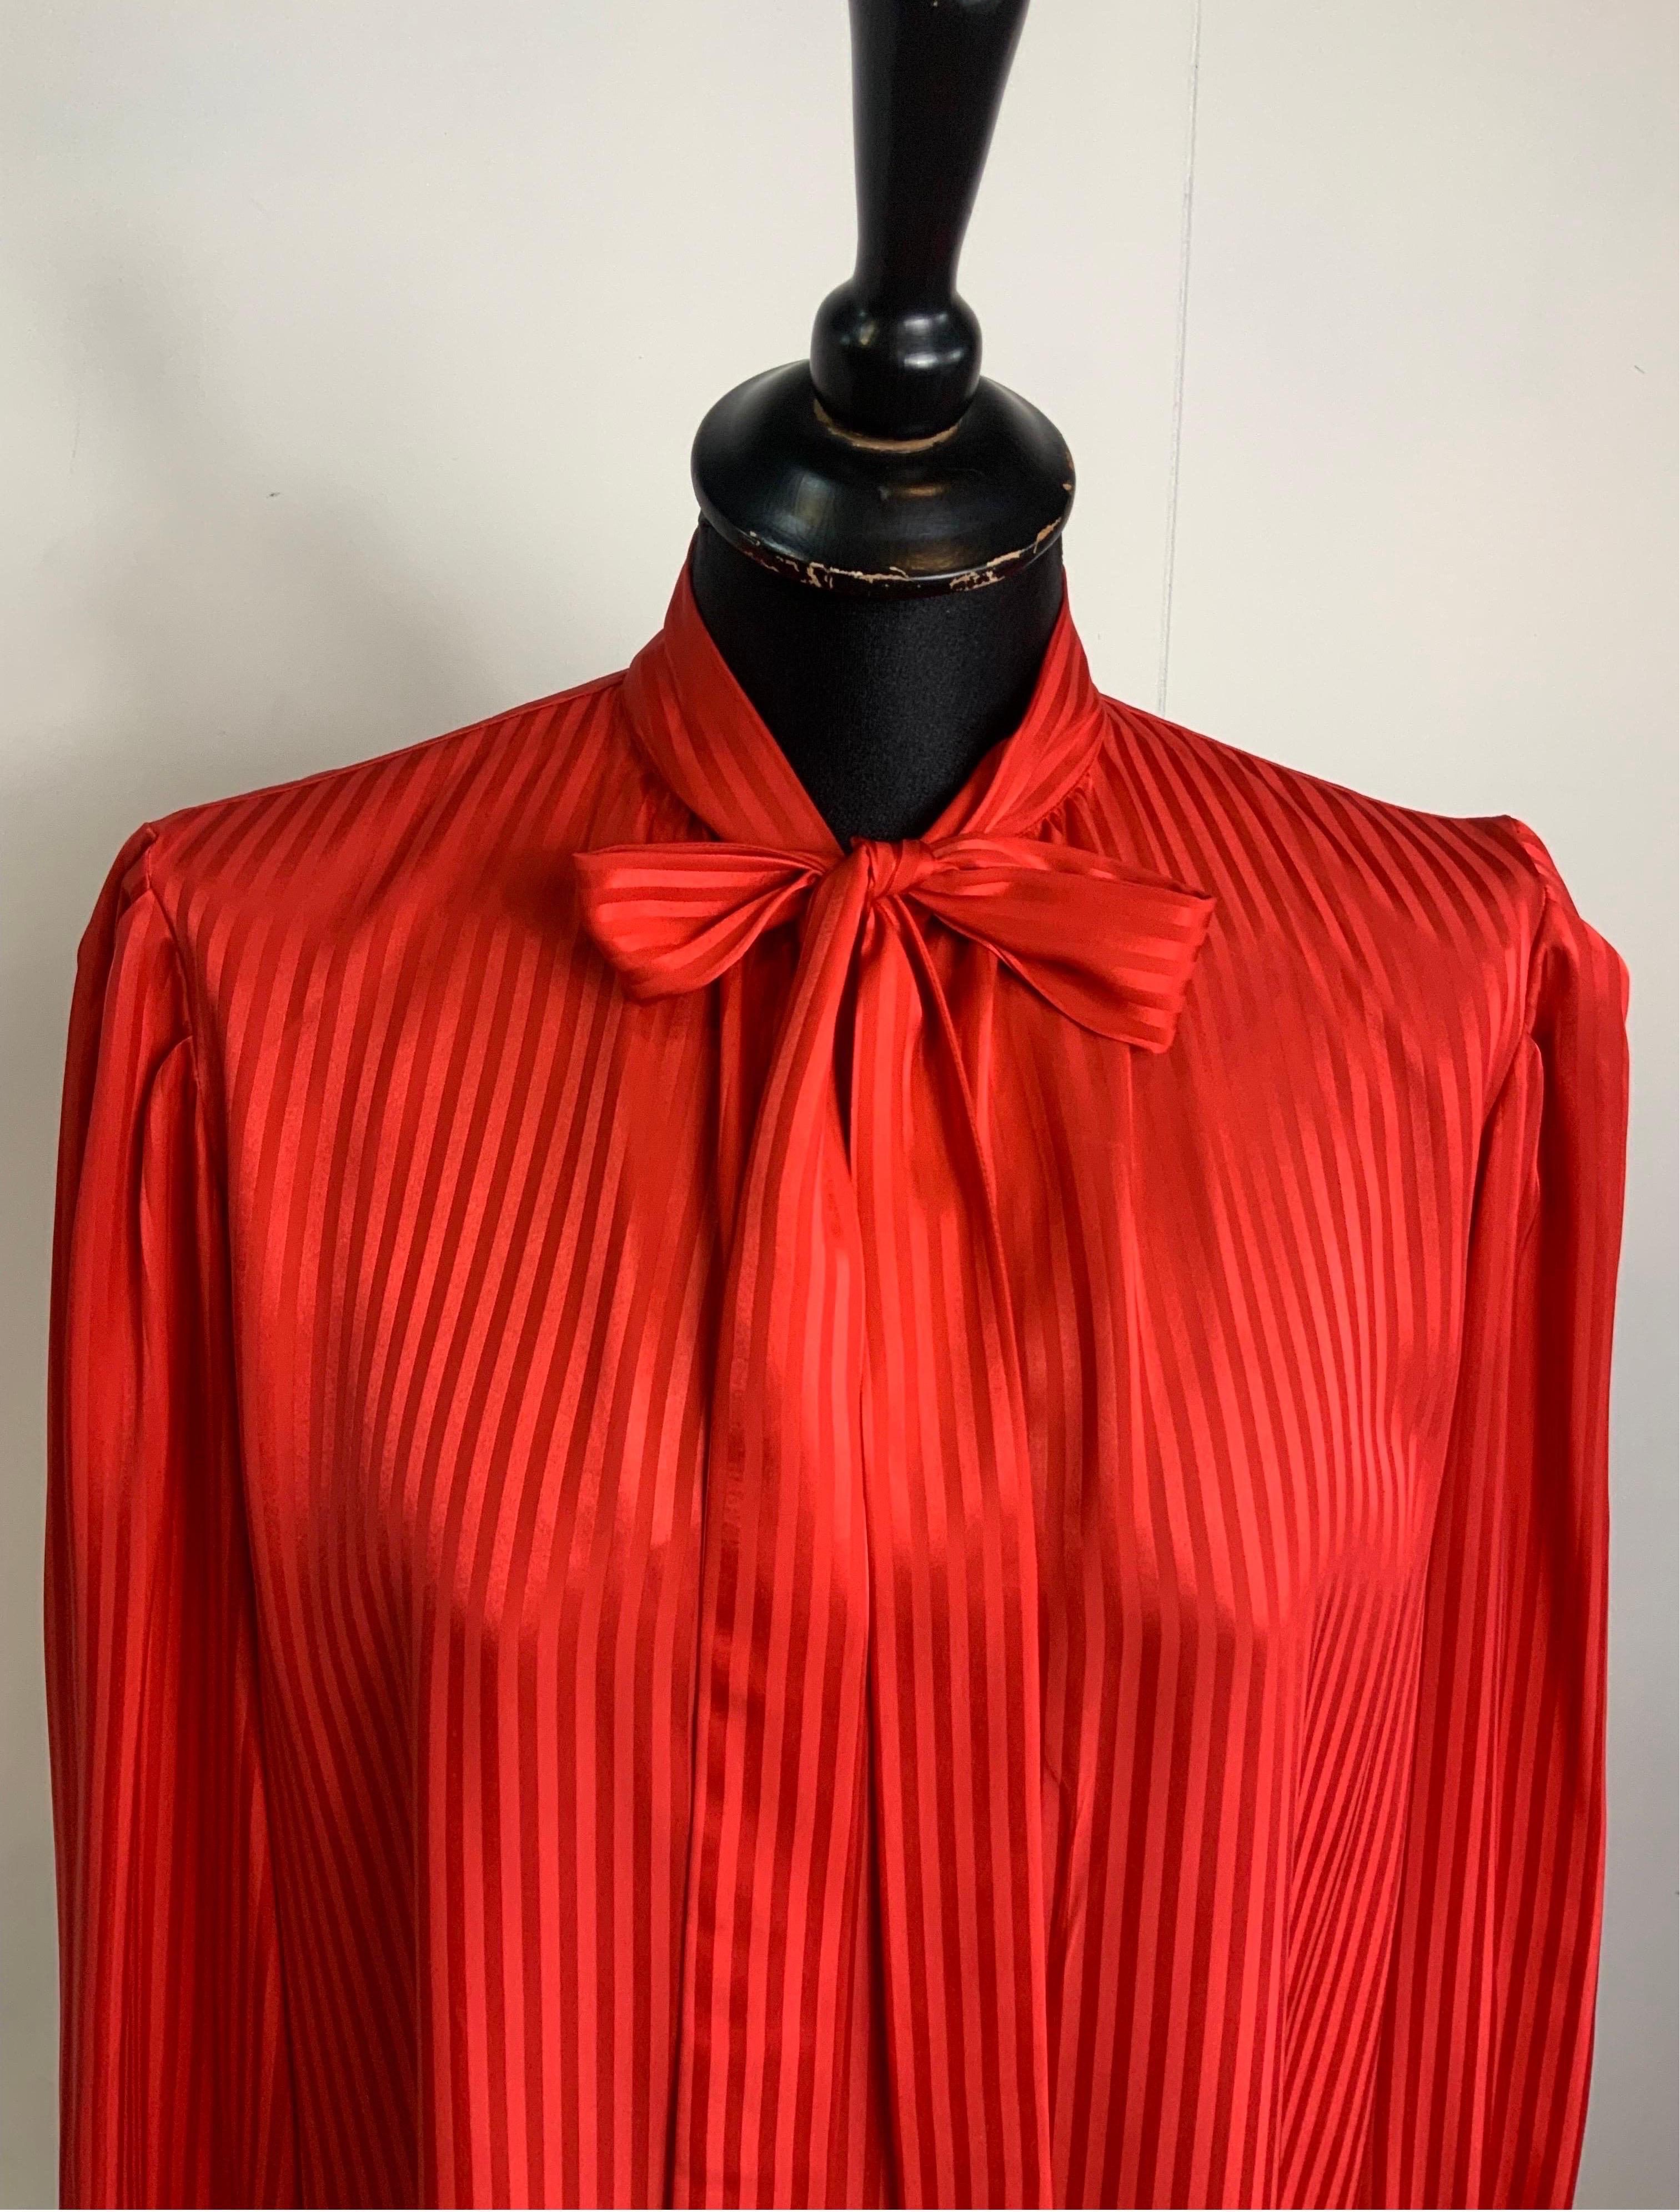 Yves Saint Laurent Variation Vintage By Hemd.
Leuchtend rote Farbe, gestreiftes Muster.
Das Label für die Zusammensetzung fehlt, aber wir glauben, dass es eine Seidenmischung ist.
Größe 38 Französisch.
Schultern 40 cm
Oberweite 52 cm
Länge 72